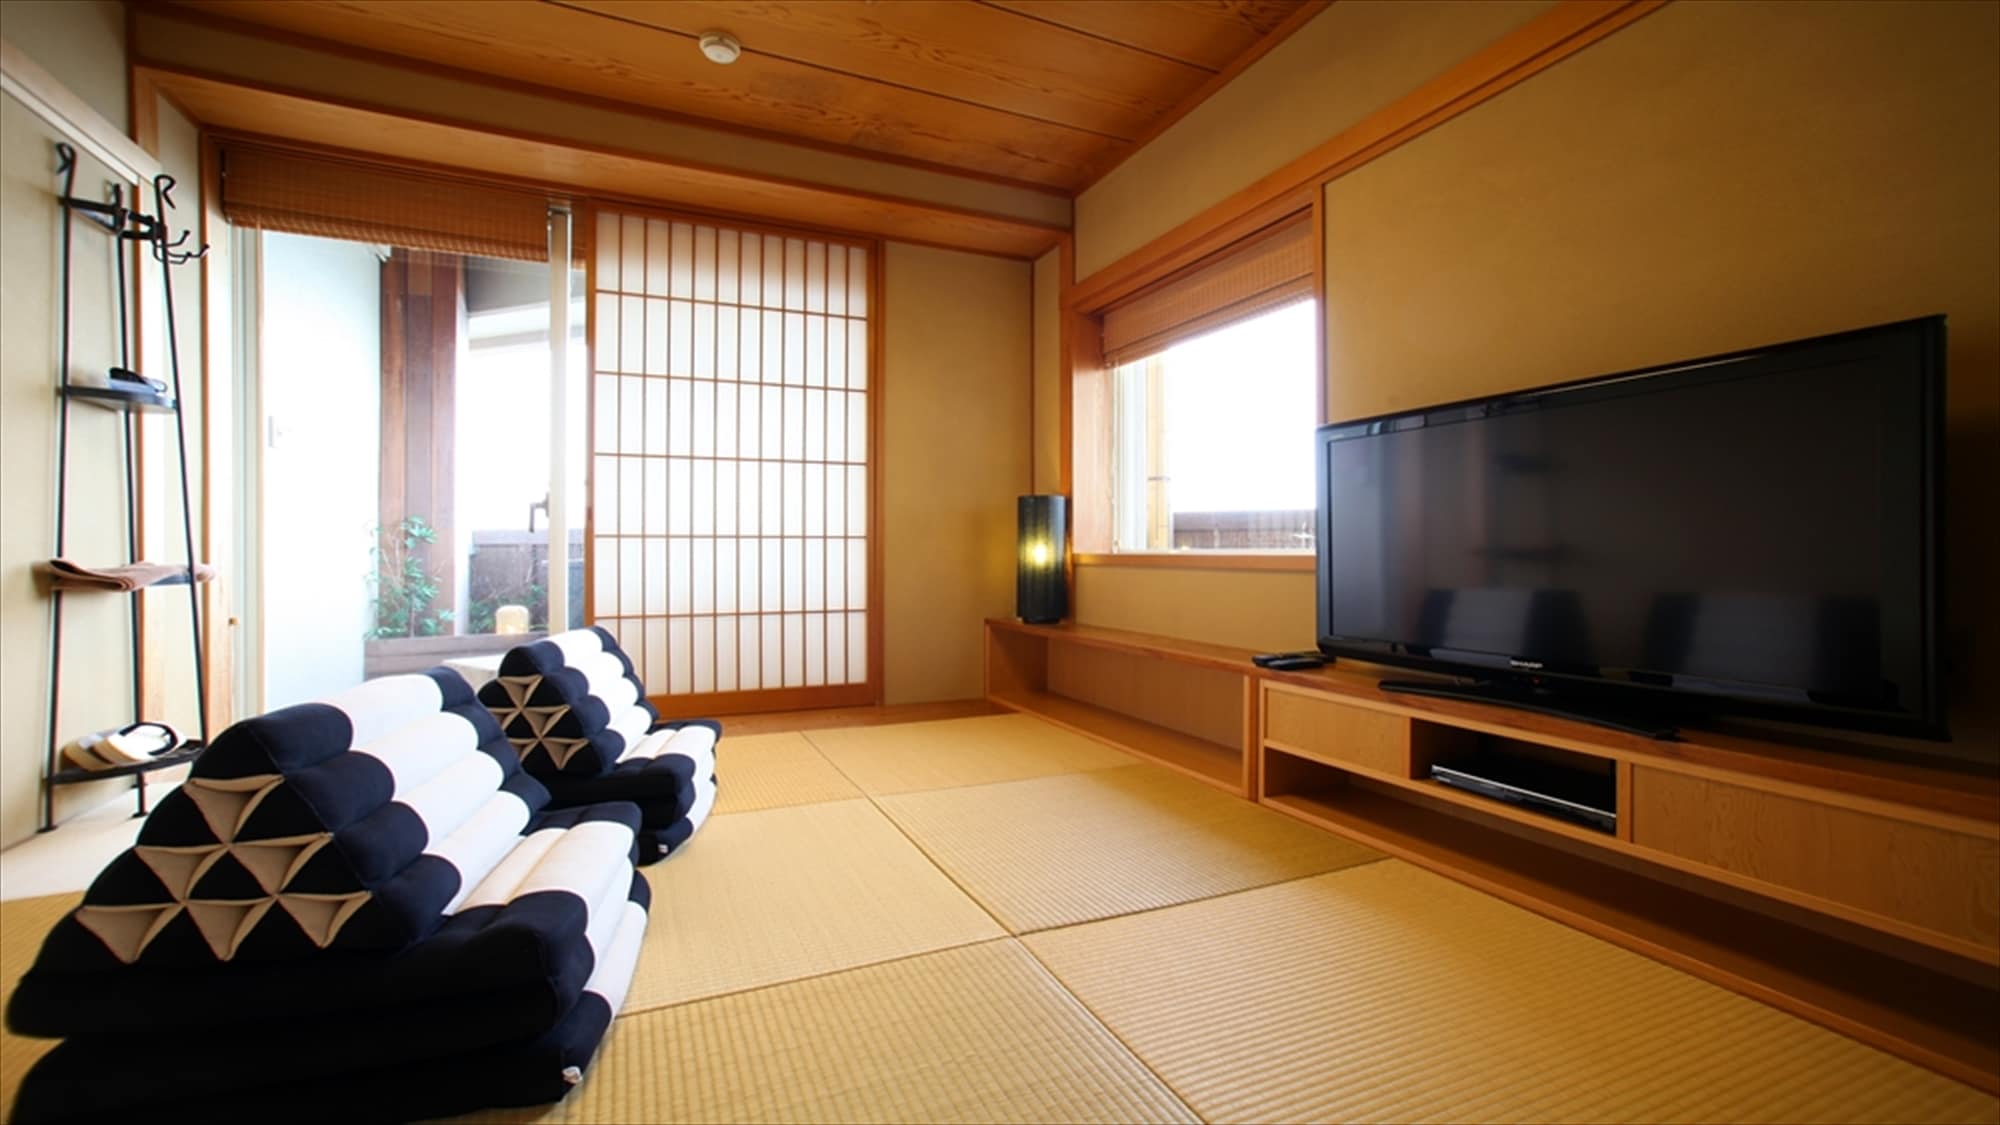 [Double bed gaya Jepang-Barat kamar 2 kamar] Tipe kamar gaya Jepang kamar sebelah. Anda akan ketagihan dengan kenyamanan bantal segitiga.